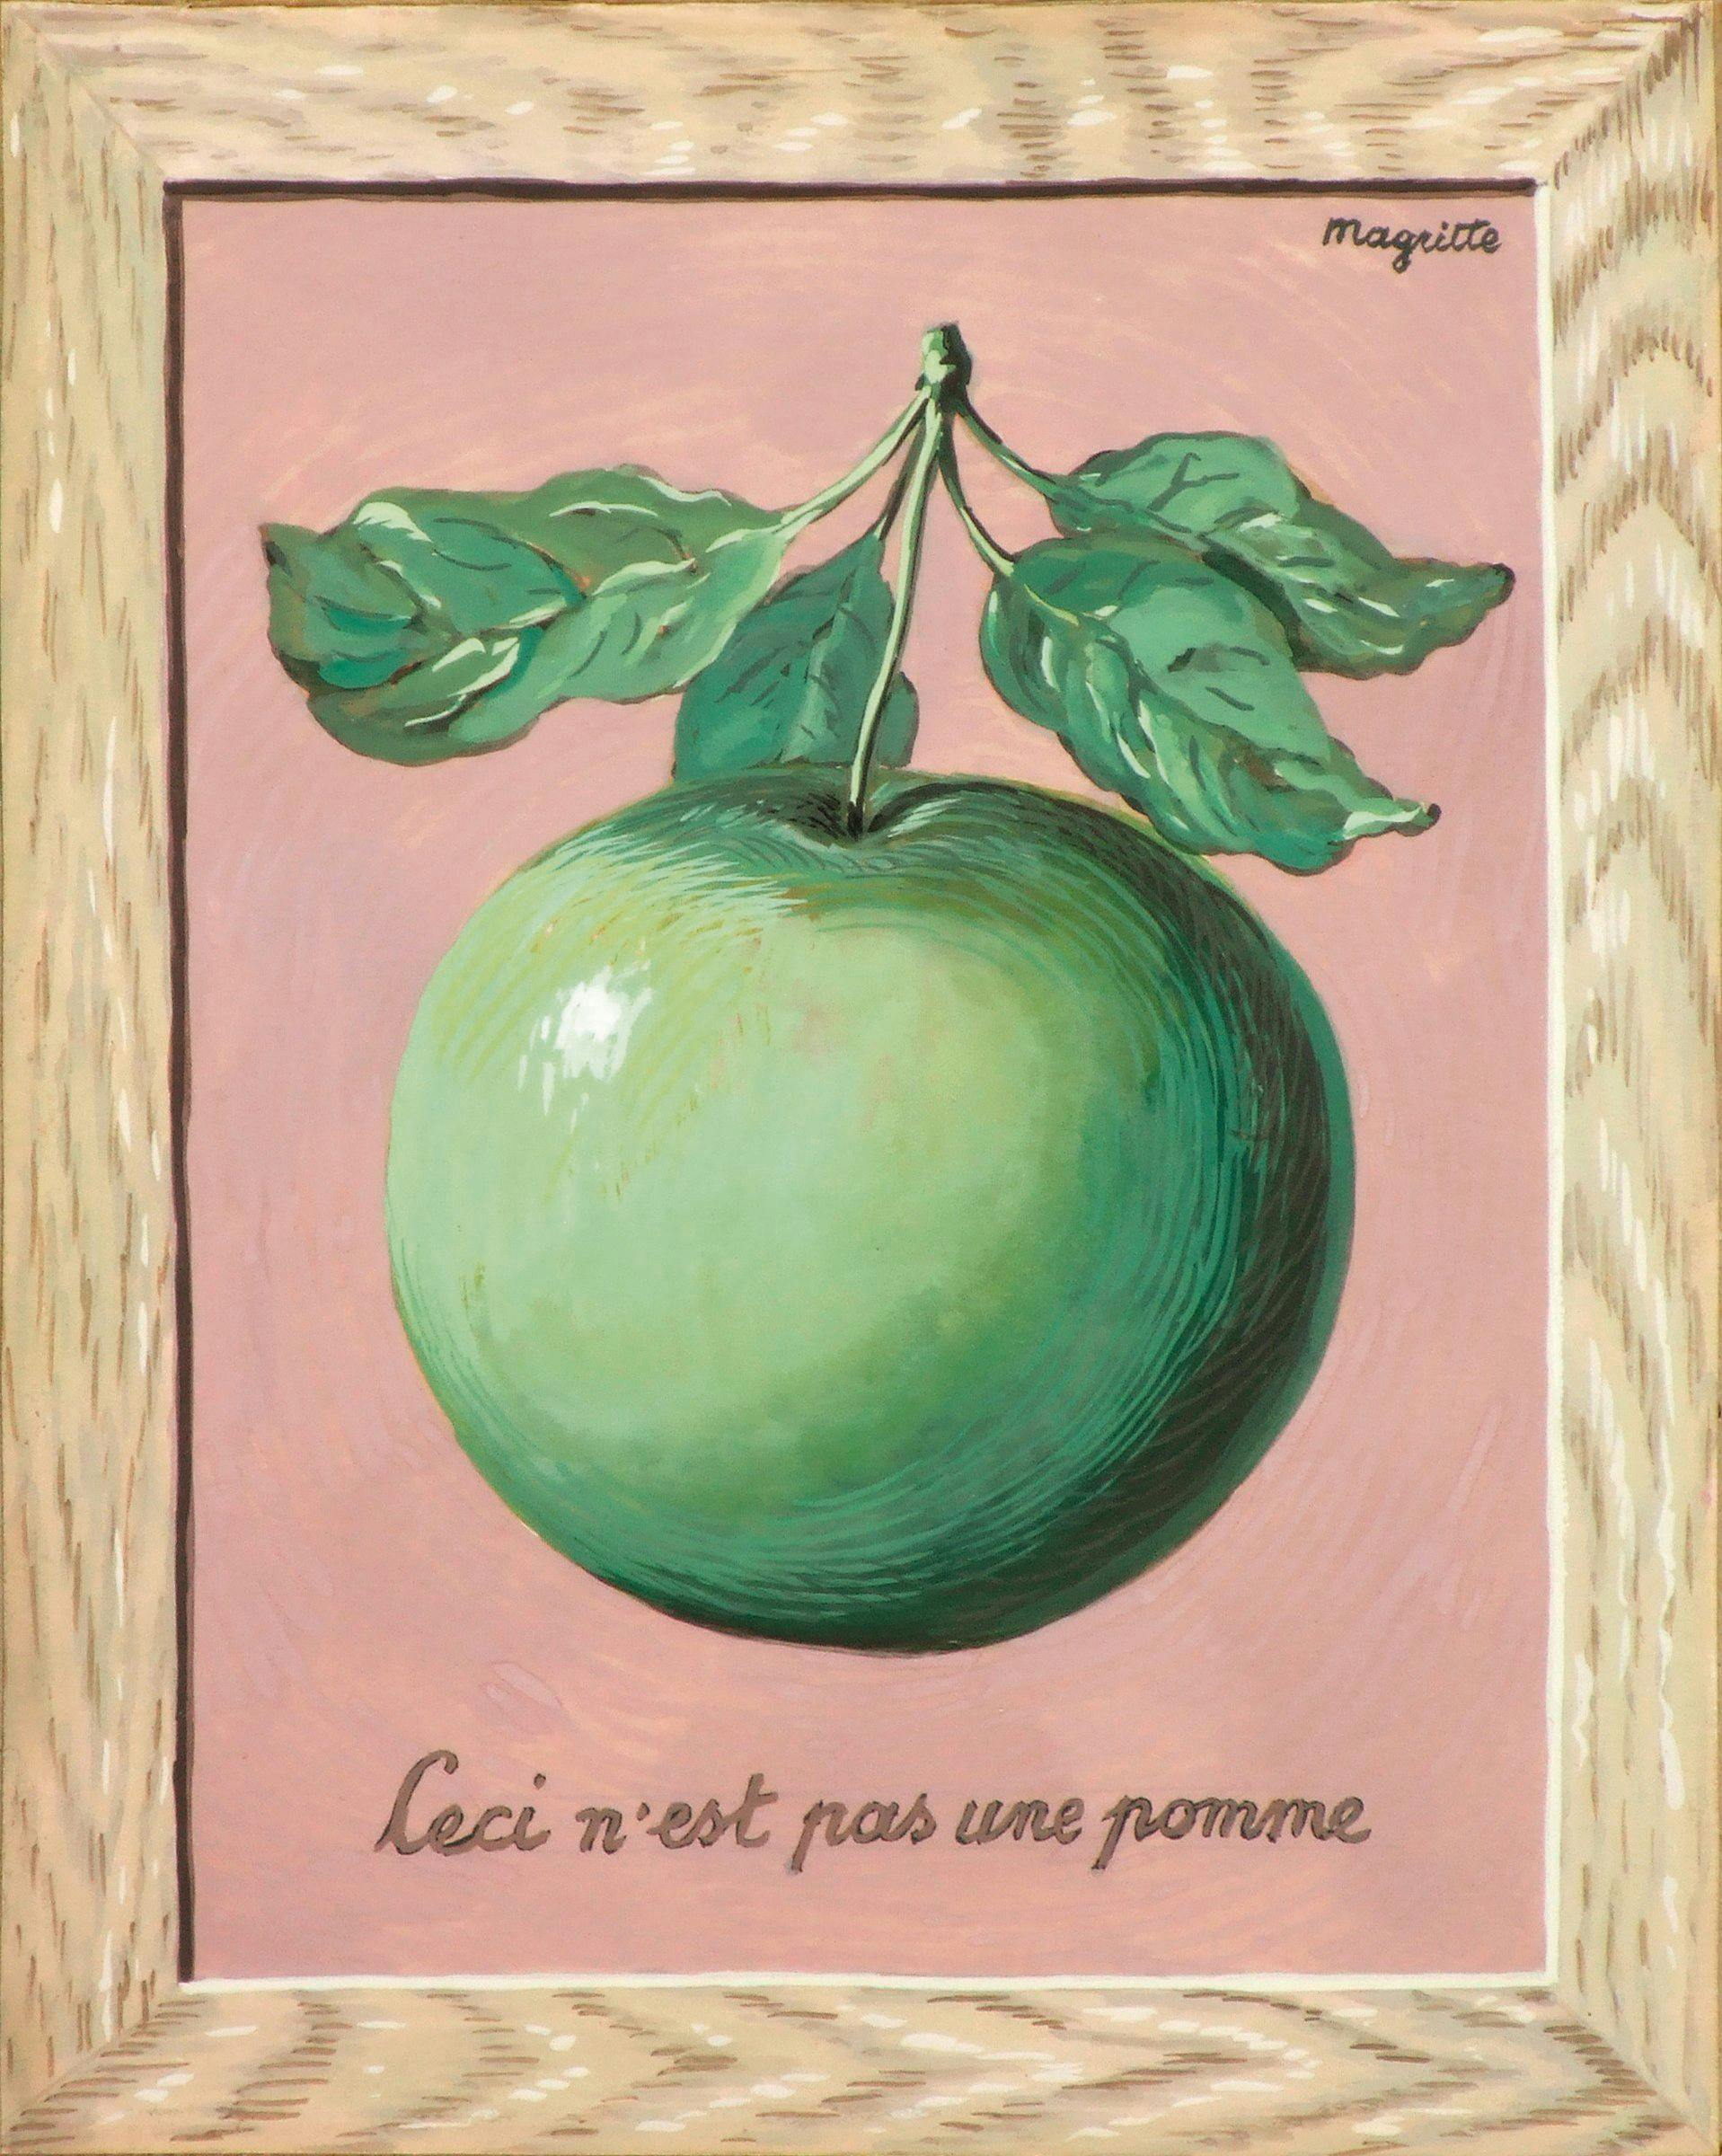 René Magritte, (Ceci n'est pas une pomme), ca 1959